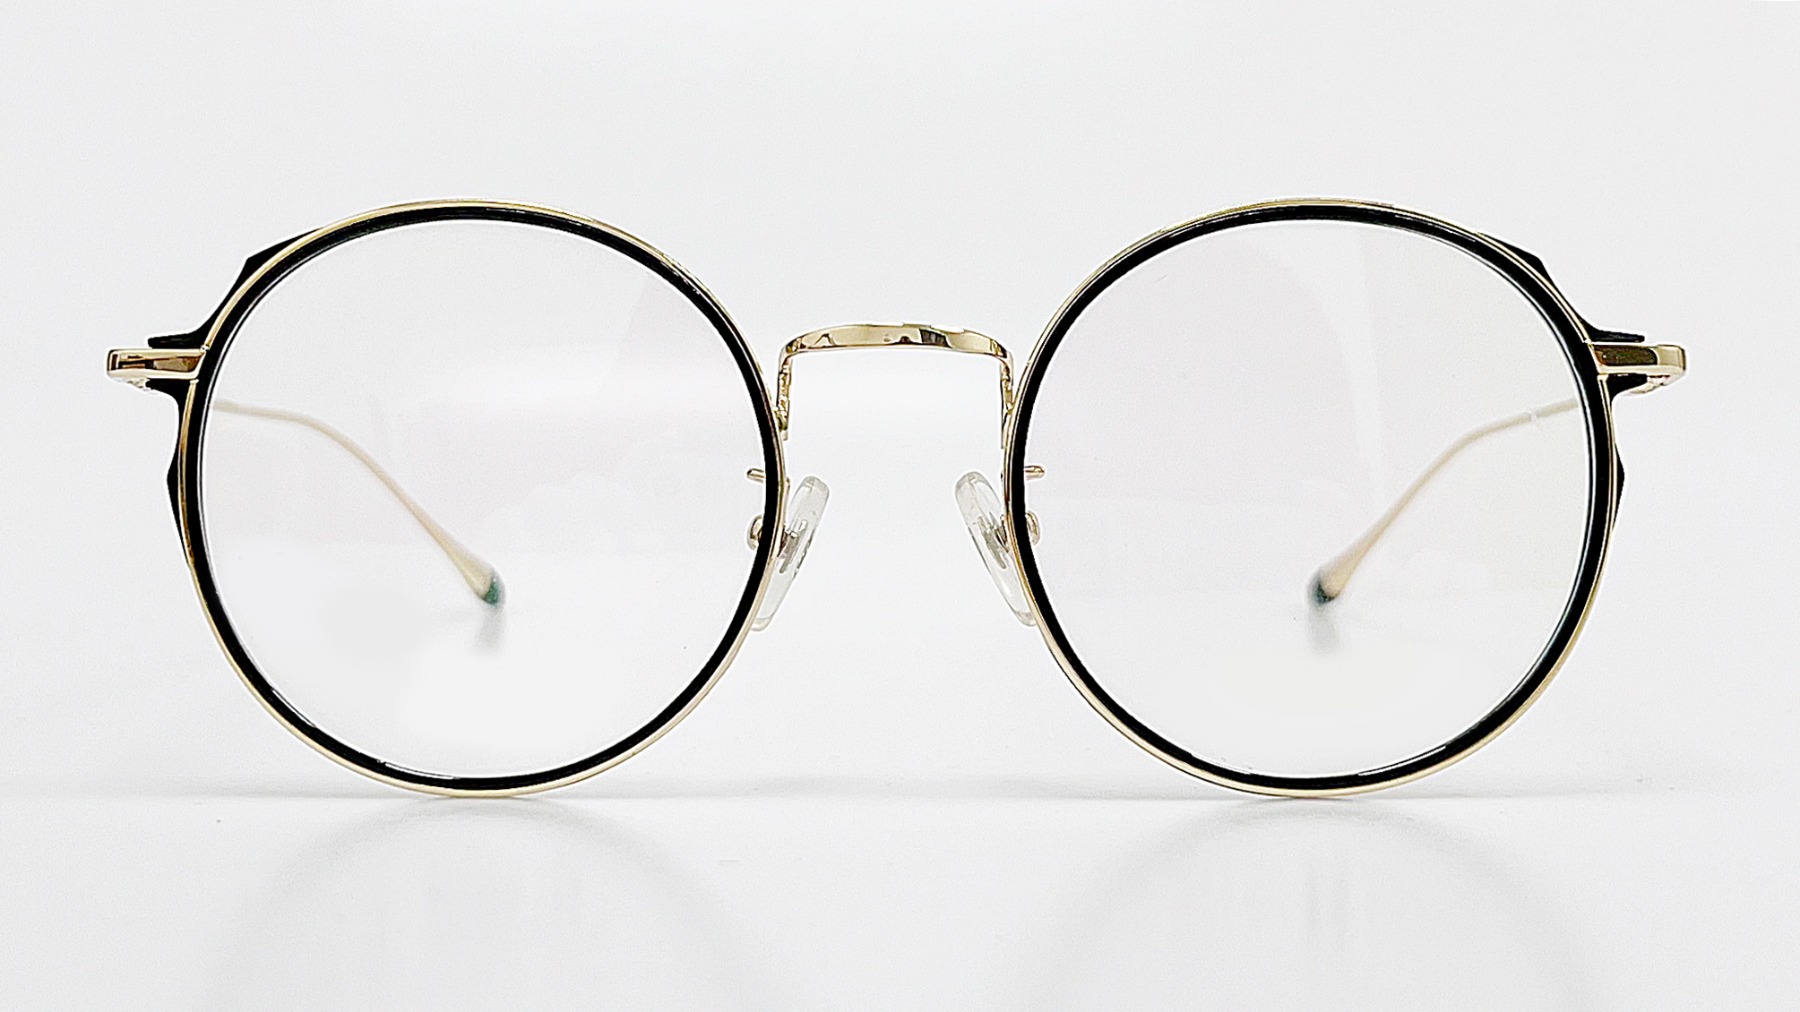 HELLEN KELLER-H26077, Korean glasses, sunglasses, eyeglasses, glasses